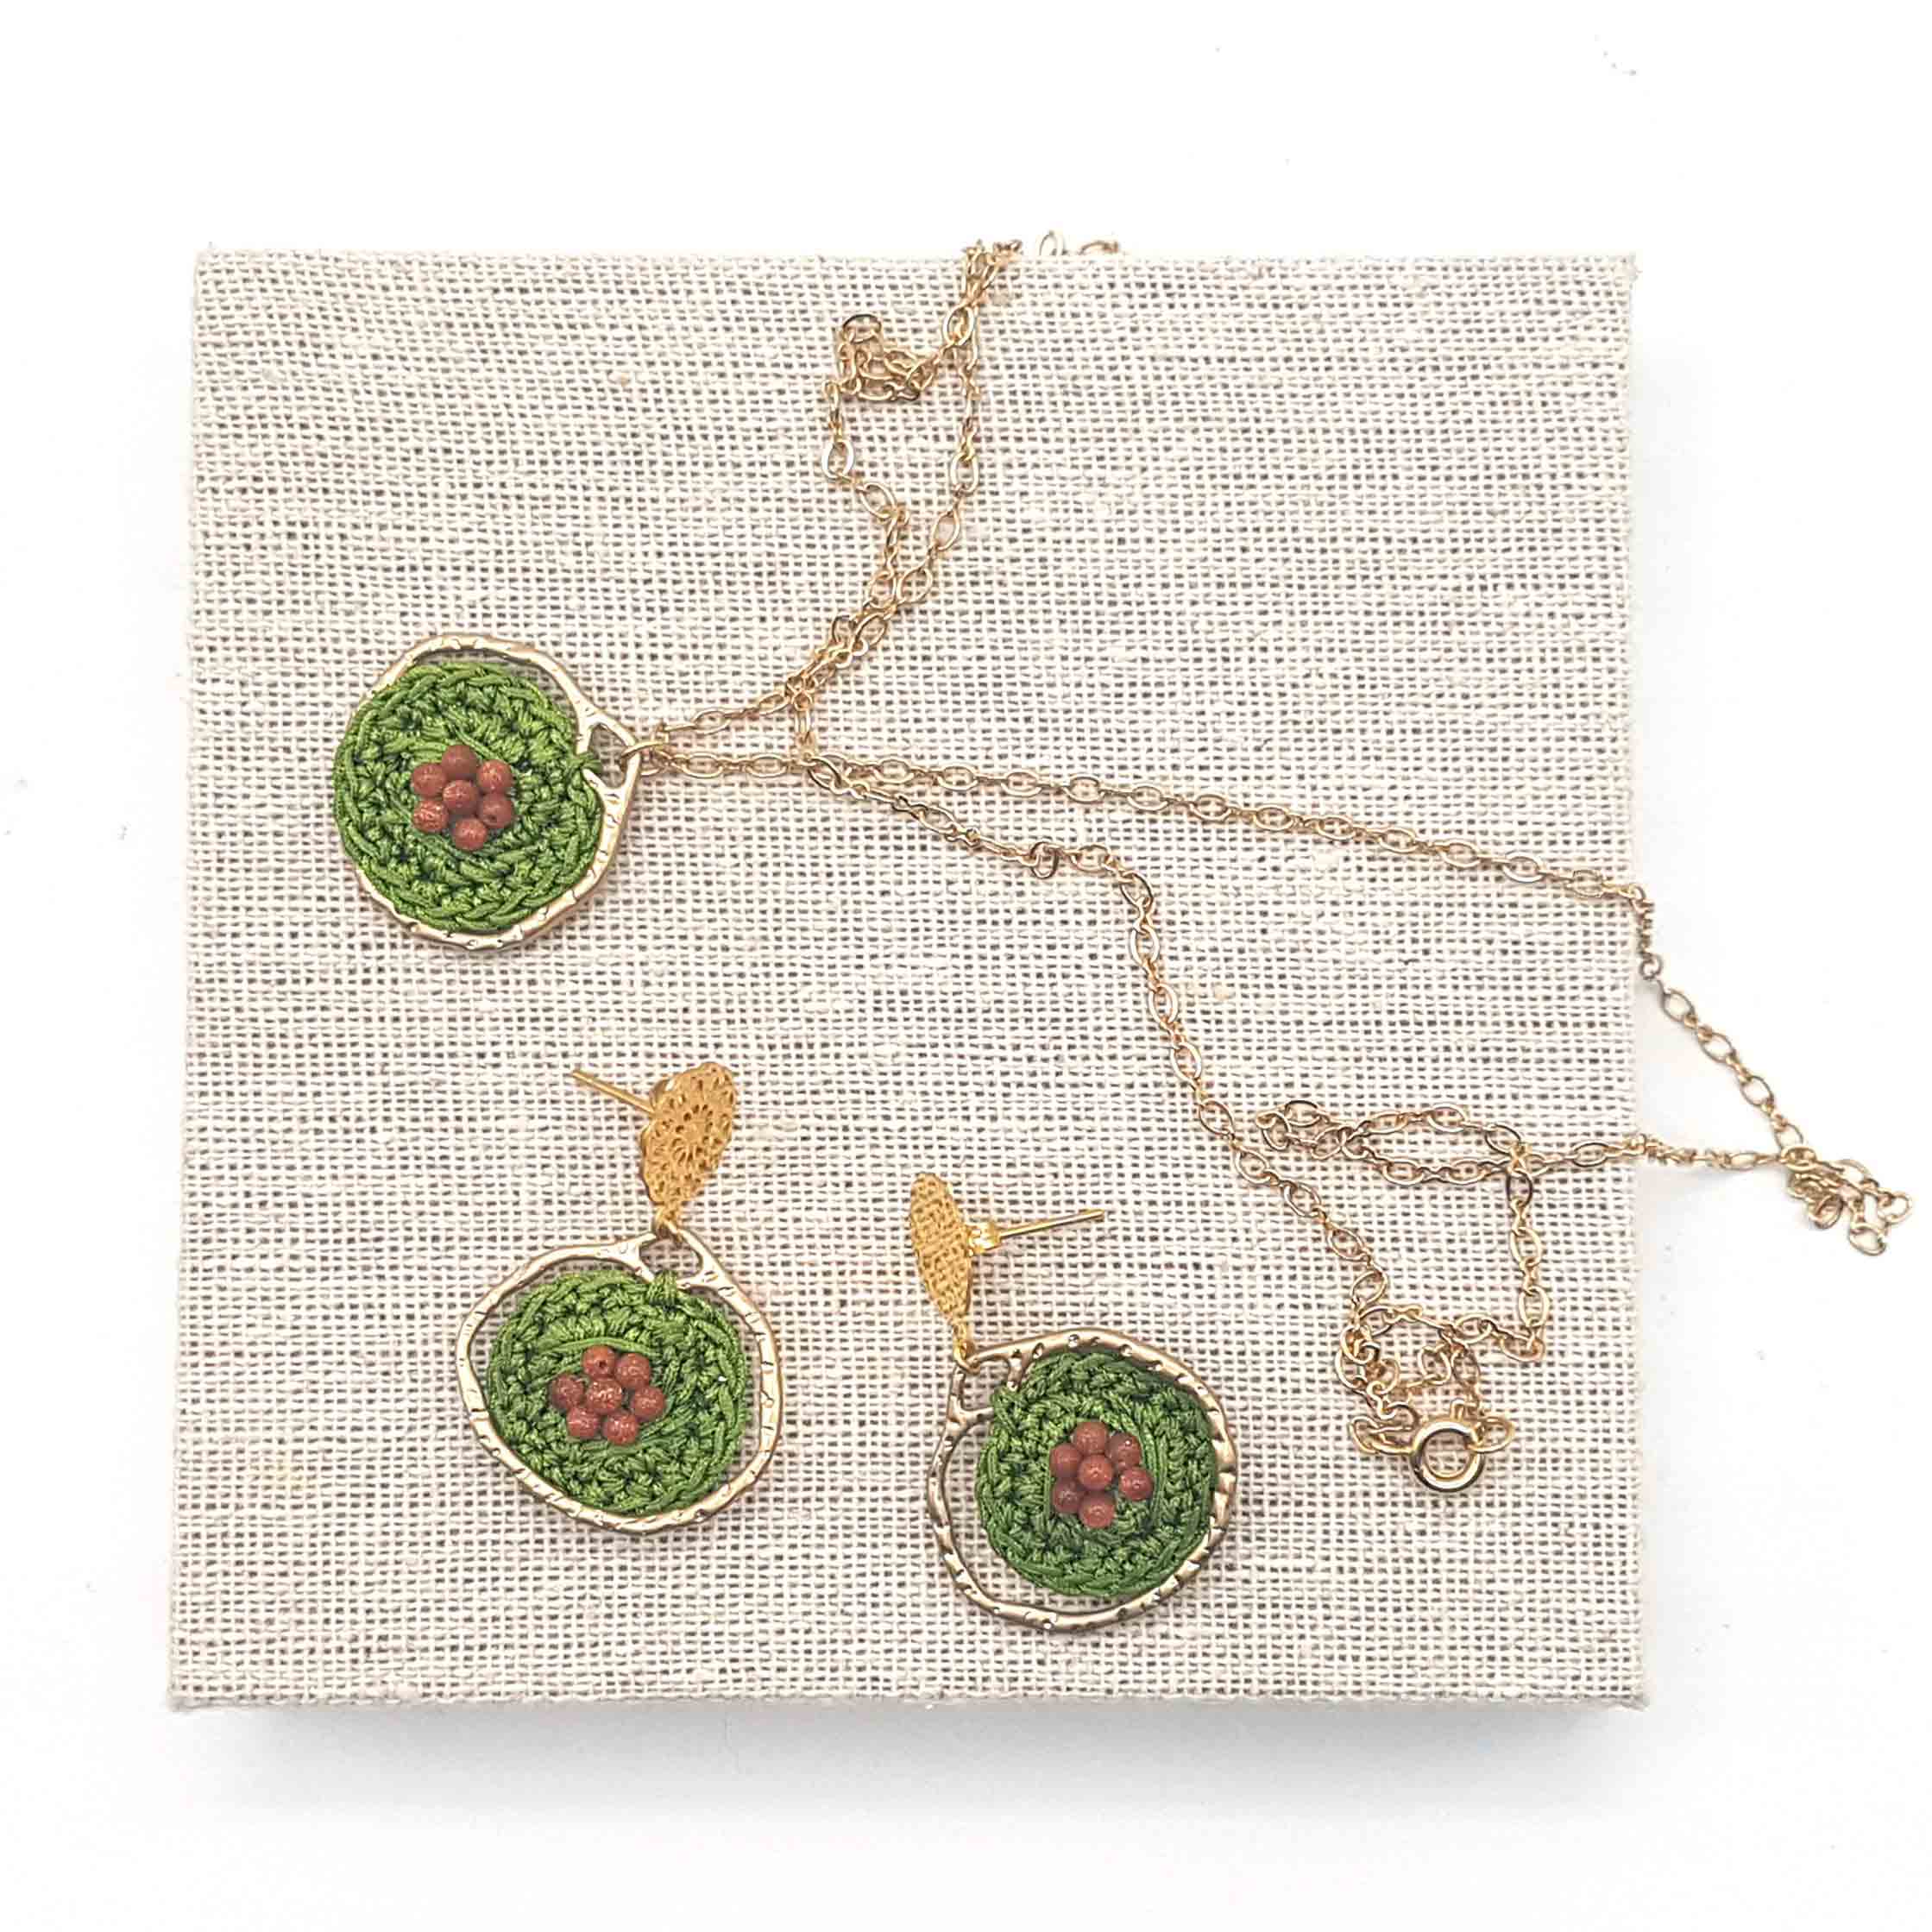 Bijou en crochet. Parure boucles d’oreille et collier vert/or réalisés en crochet. Brodés avec des perles naturelles. Faits à la main et made in France.